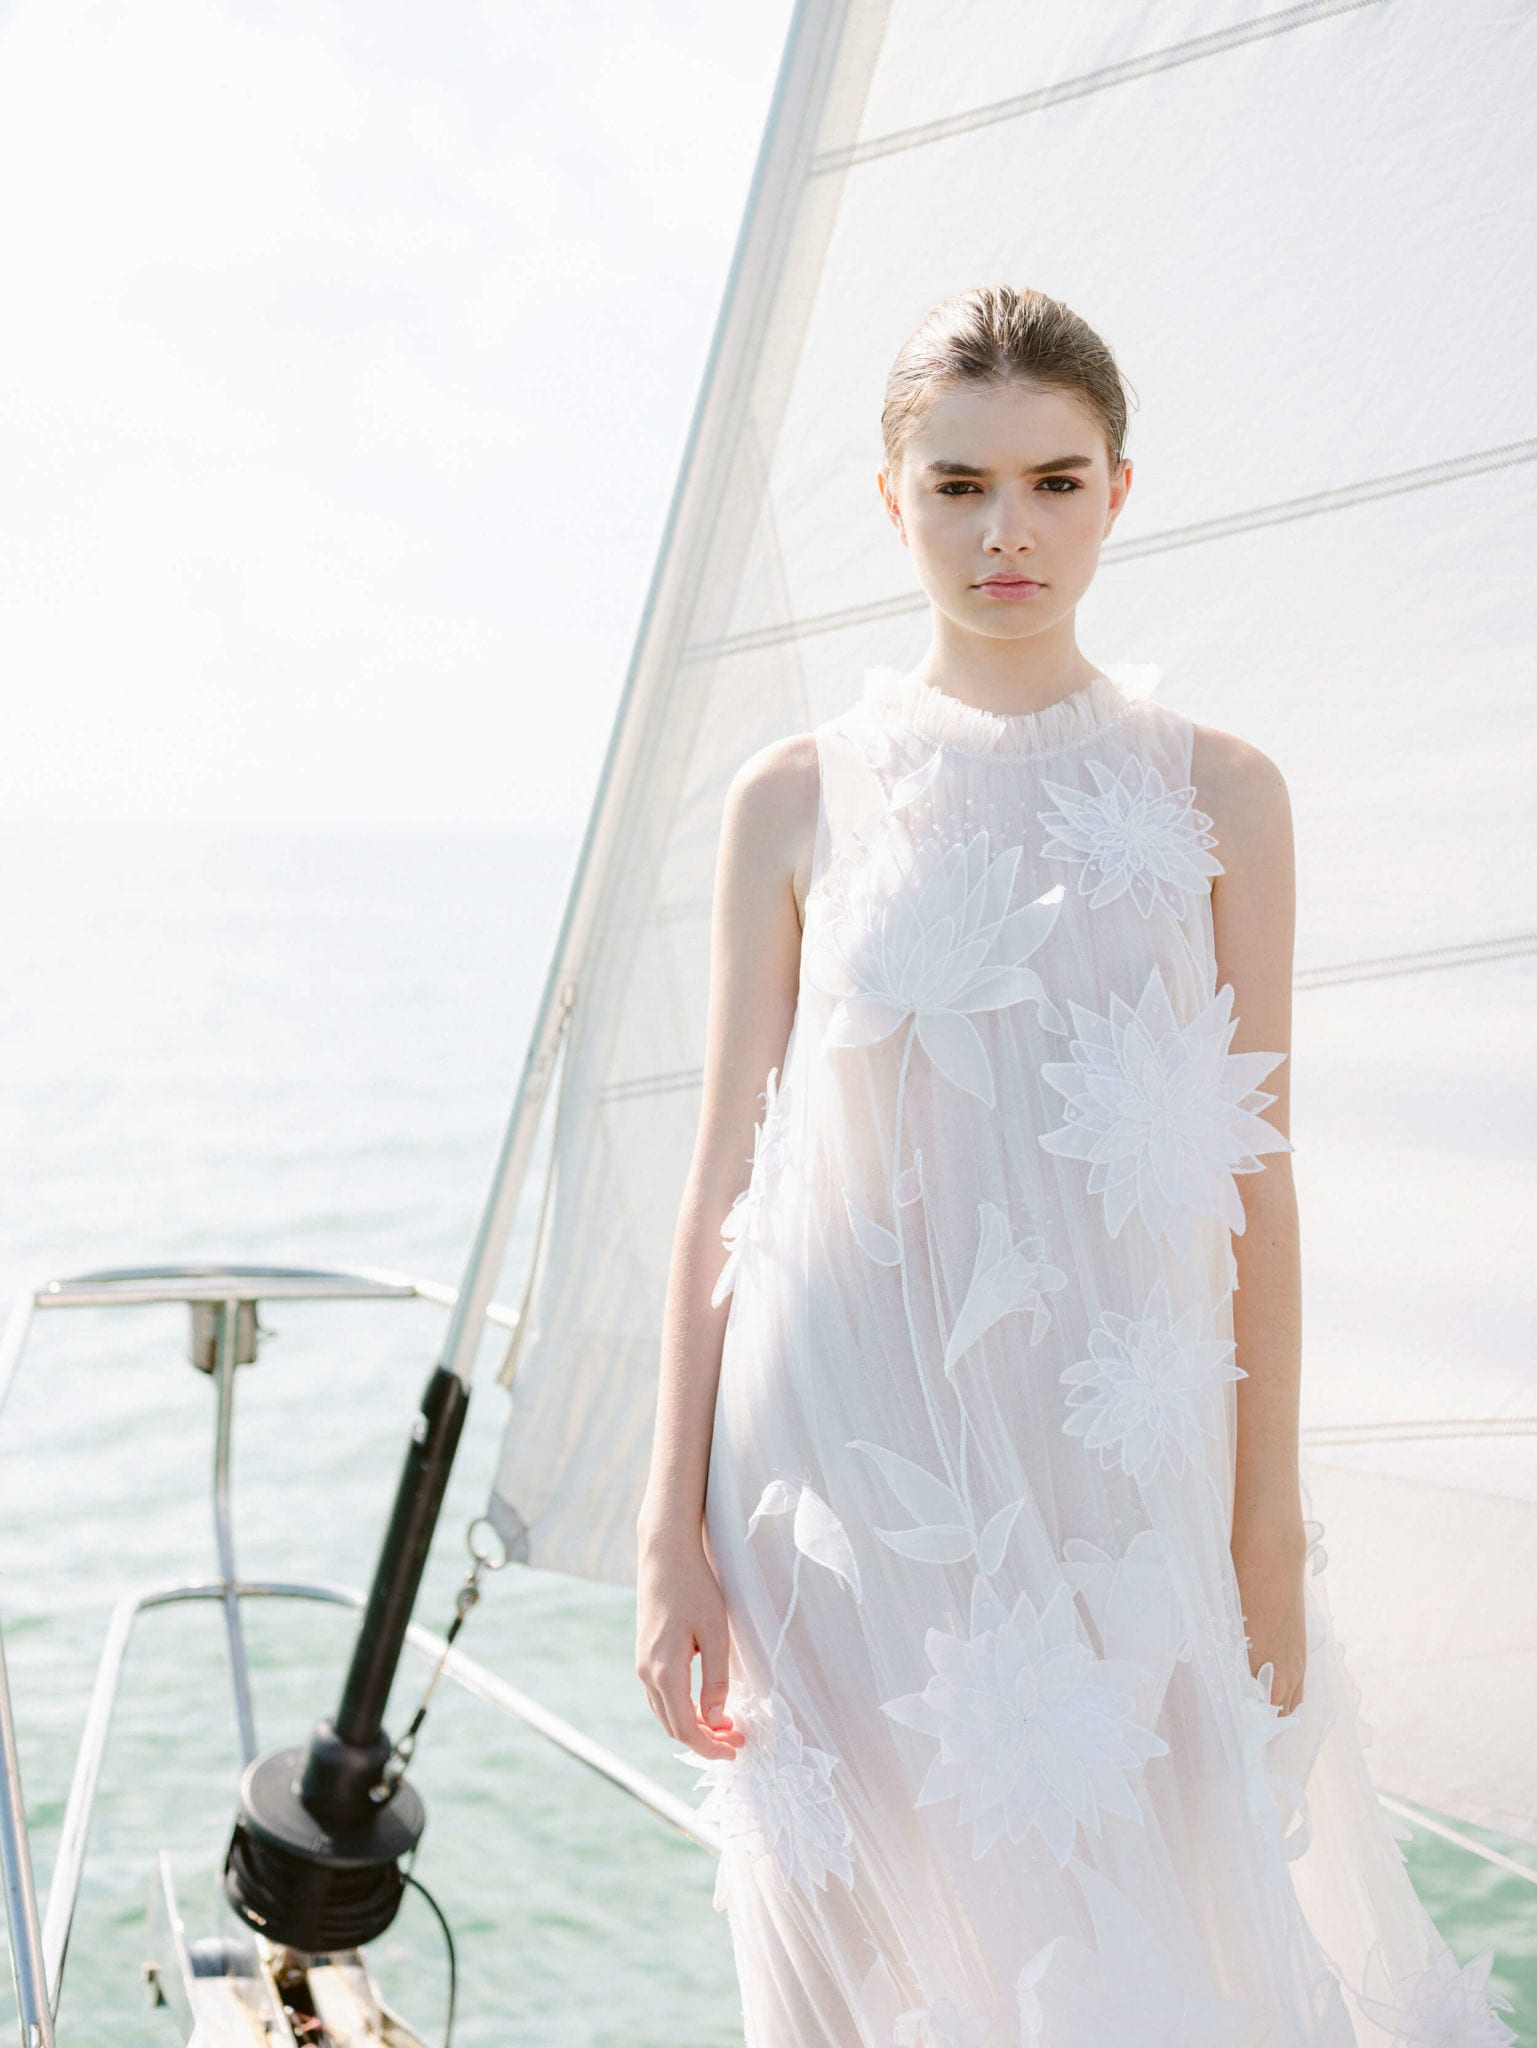 Designer Bridal Wear Sets Sail in Key Biscayne - KT Merry